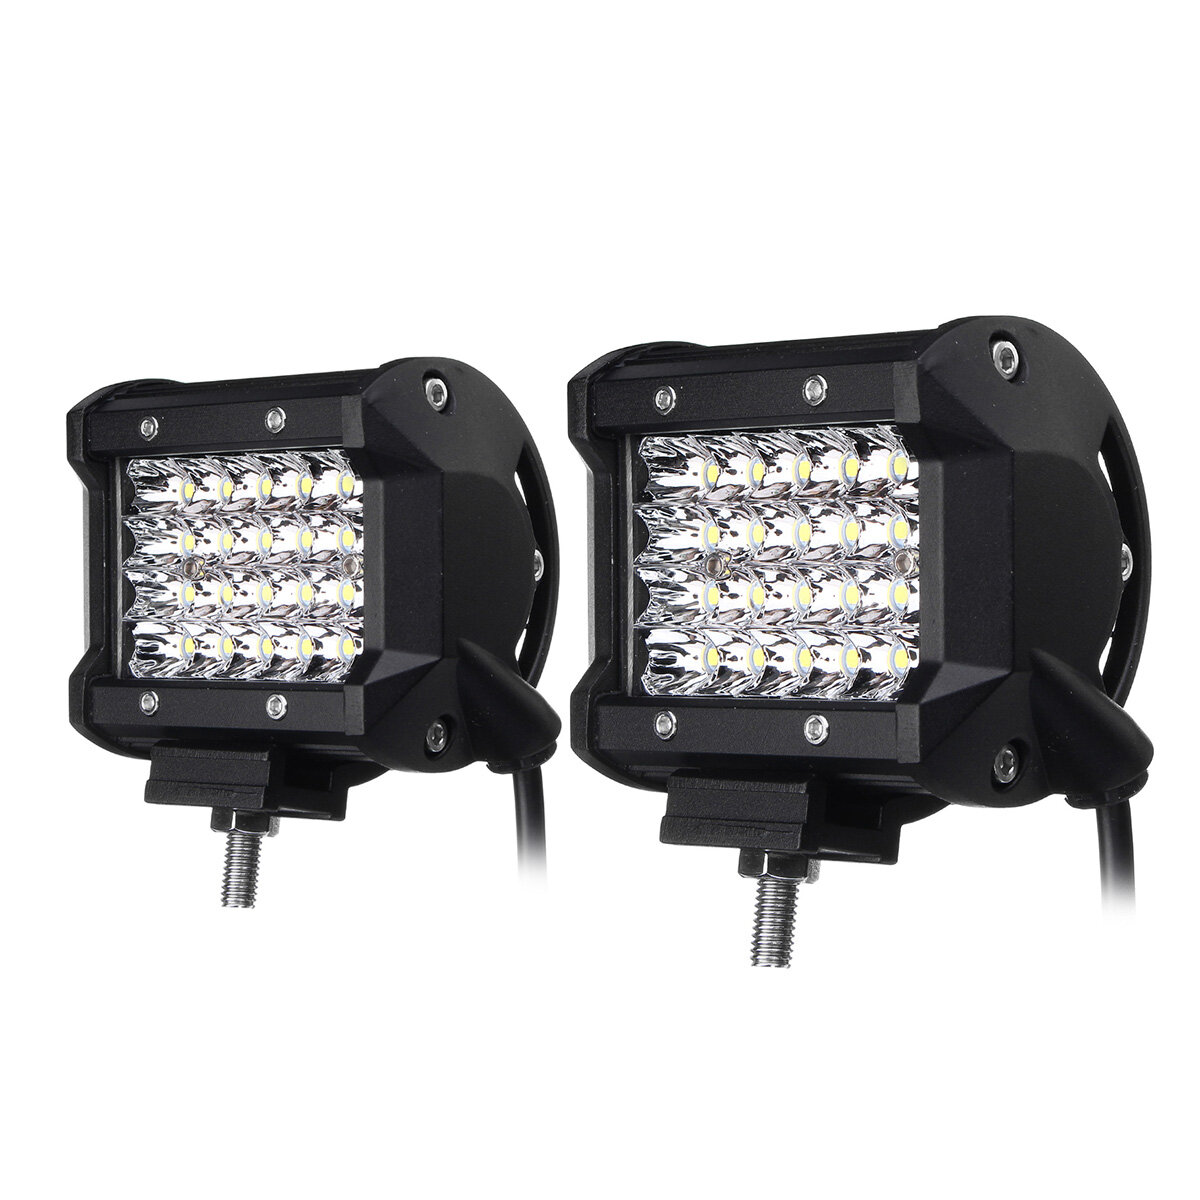 

4Inch LED Work Light Bar Spot Beam Fog Lamp 10-30V 72W White 2PCS for Offroad SUV Truck